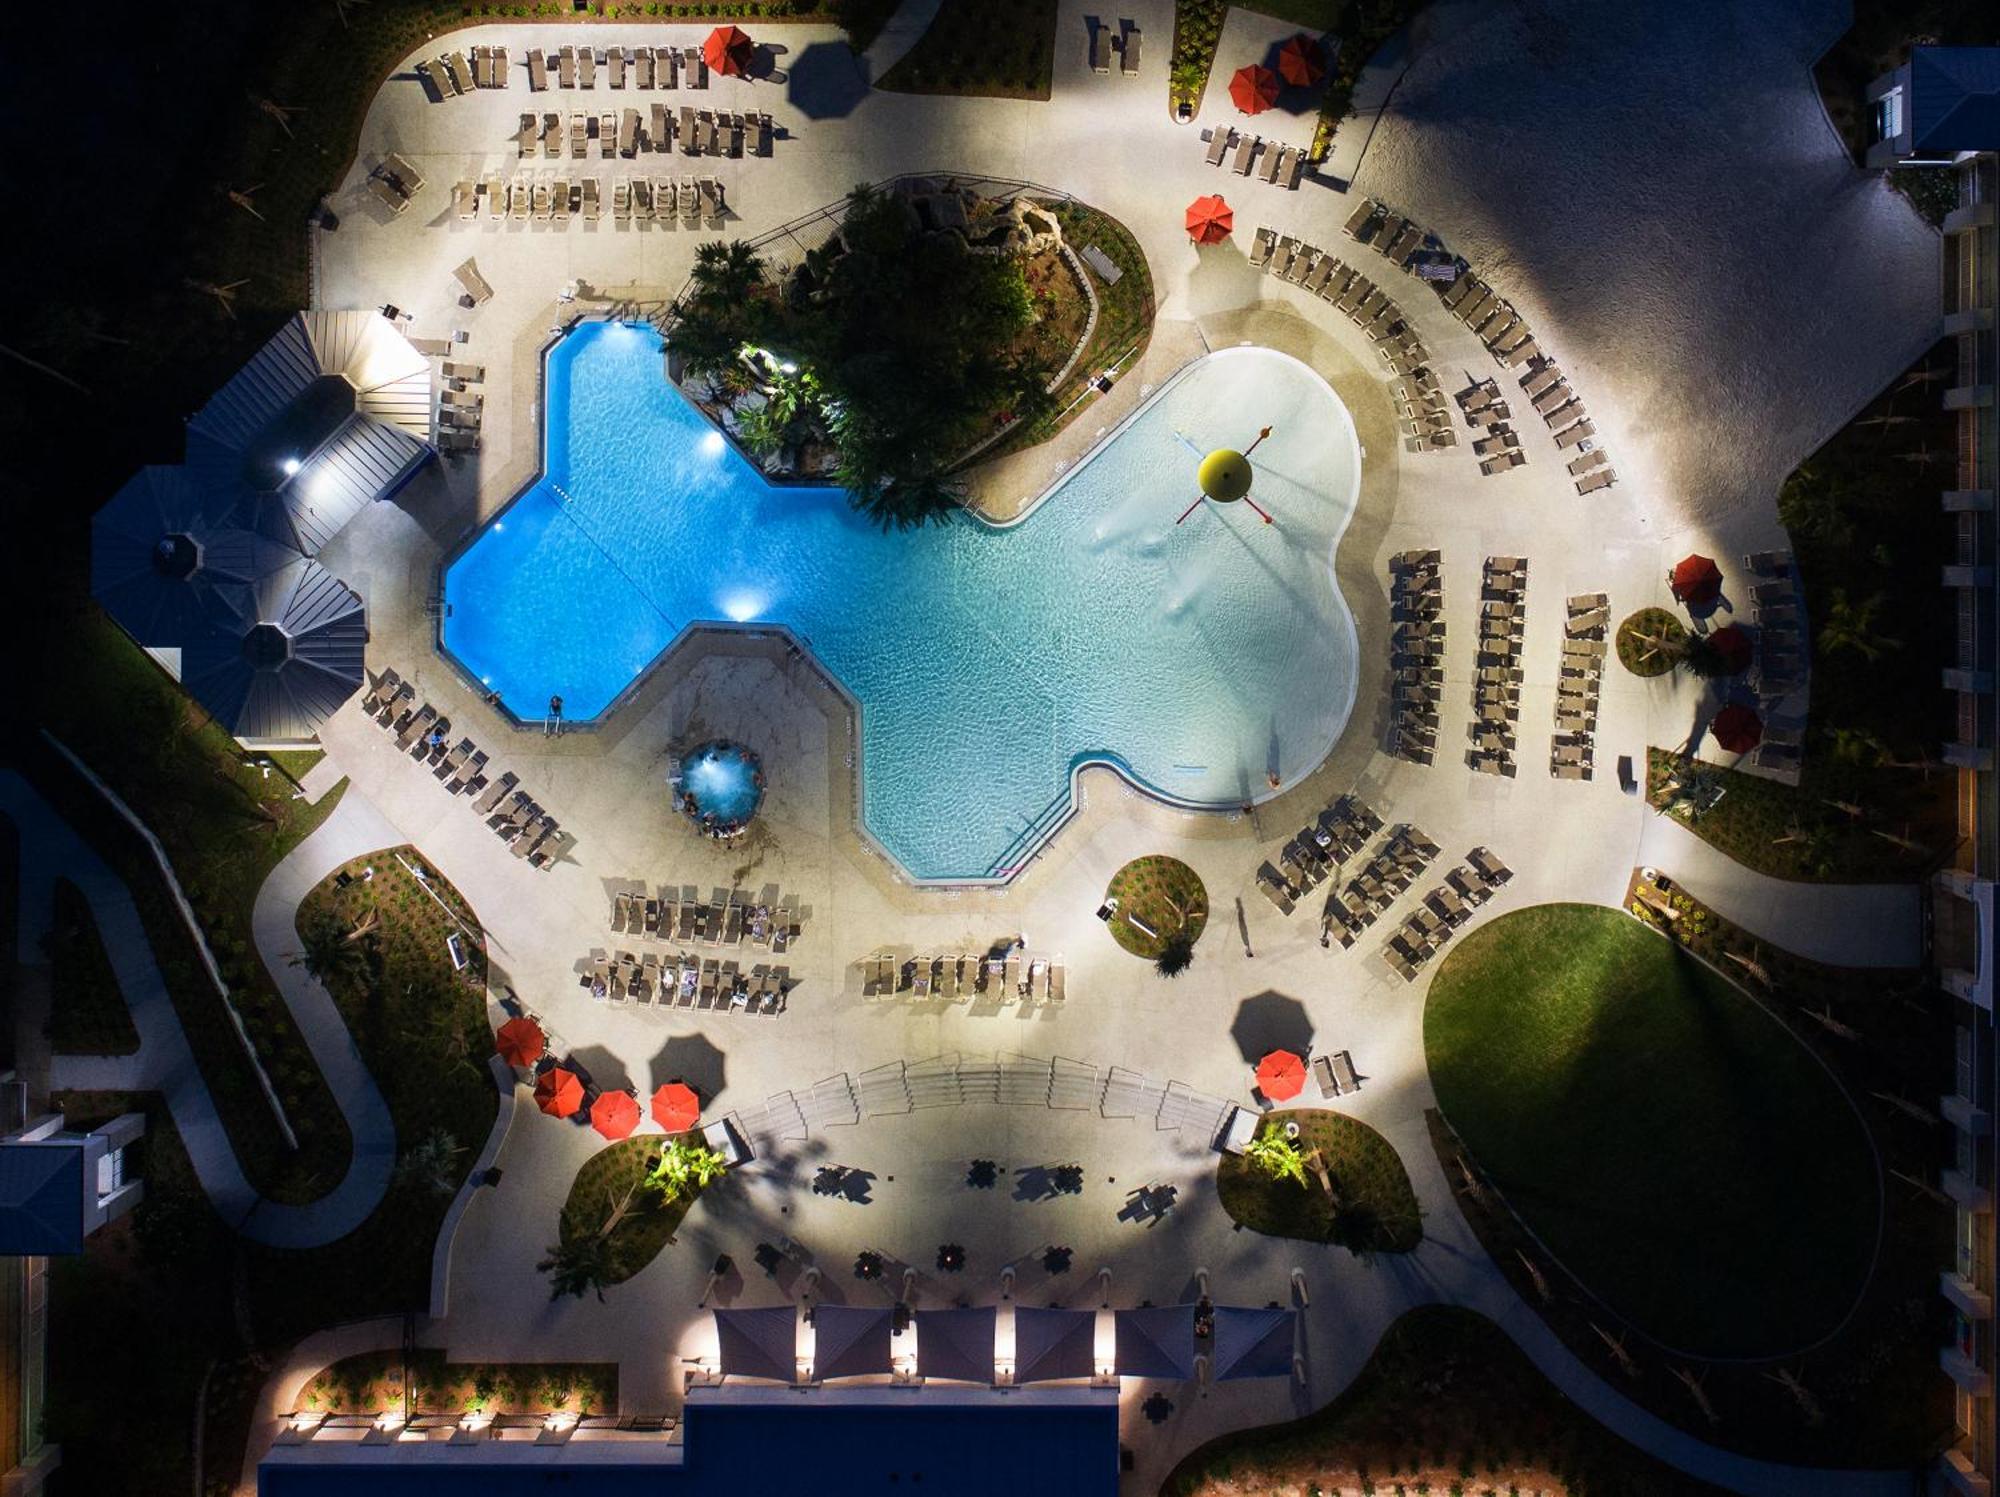 Avanti Palms Resort And Conference Center Orlando Esterno foto